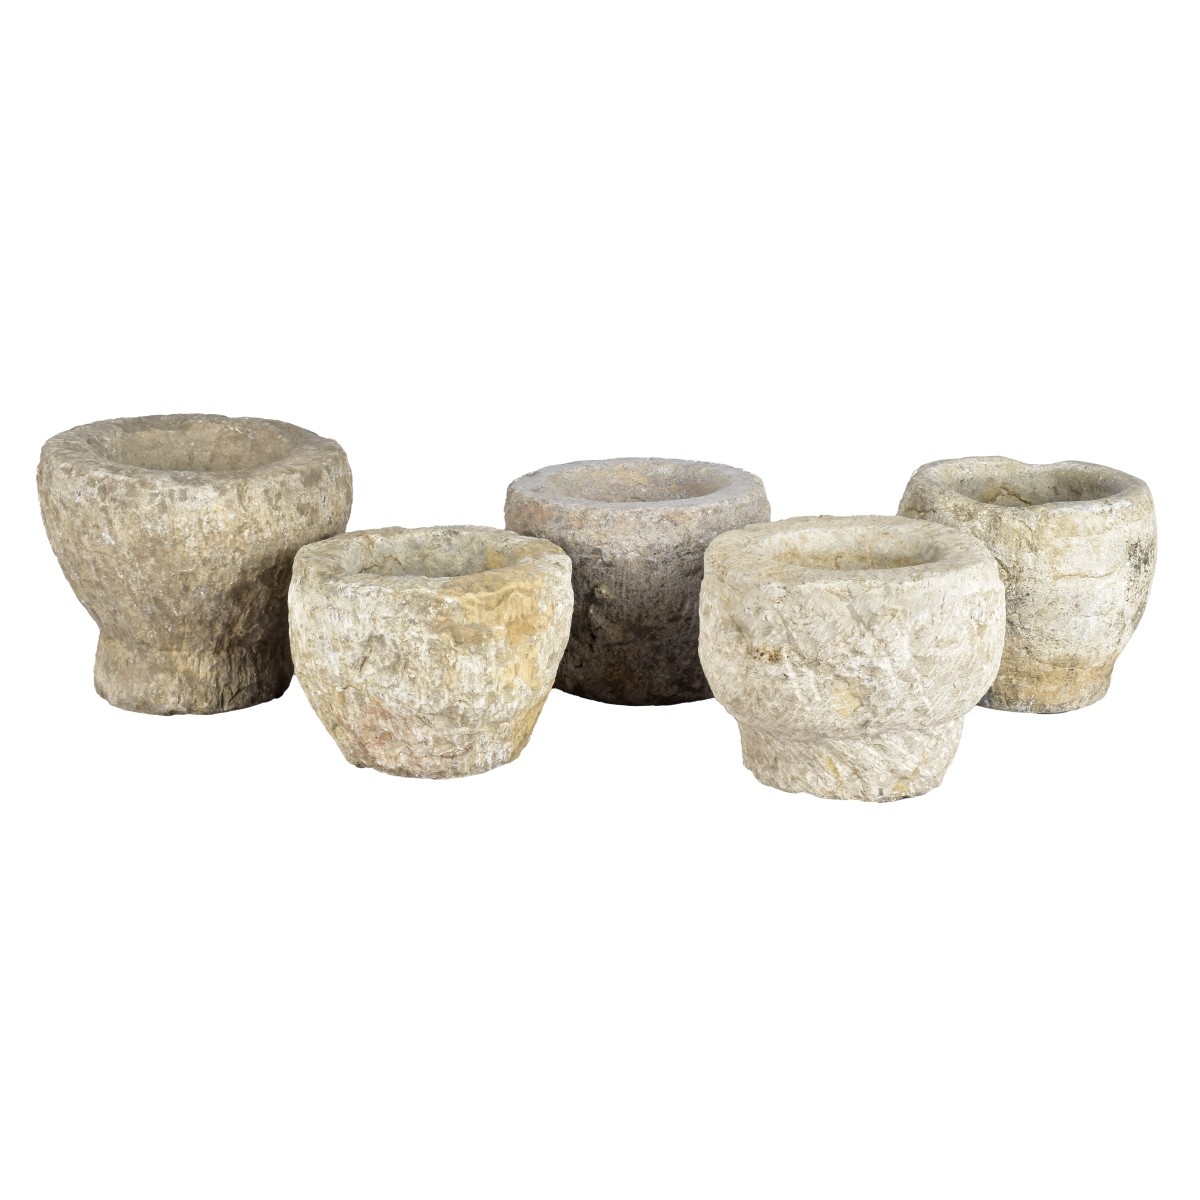 Five Stoneware Mortars